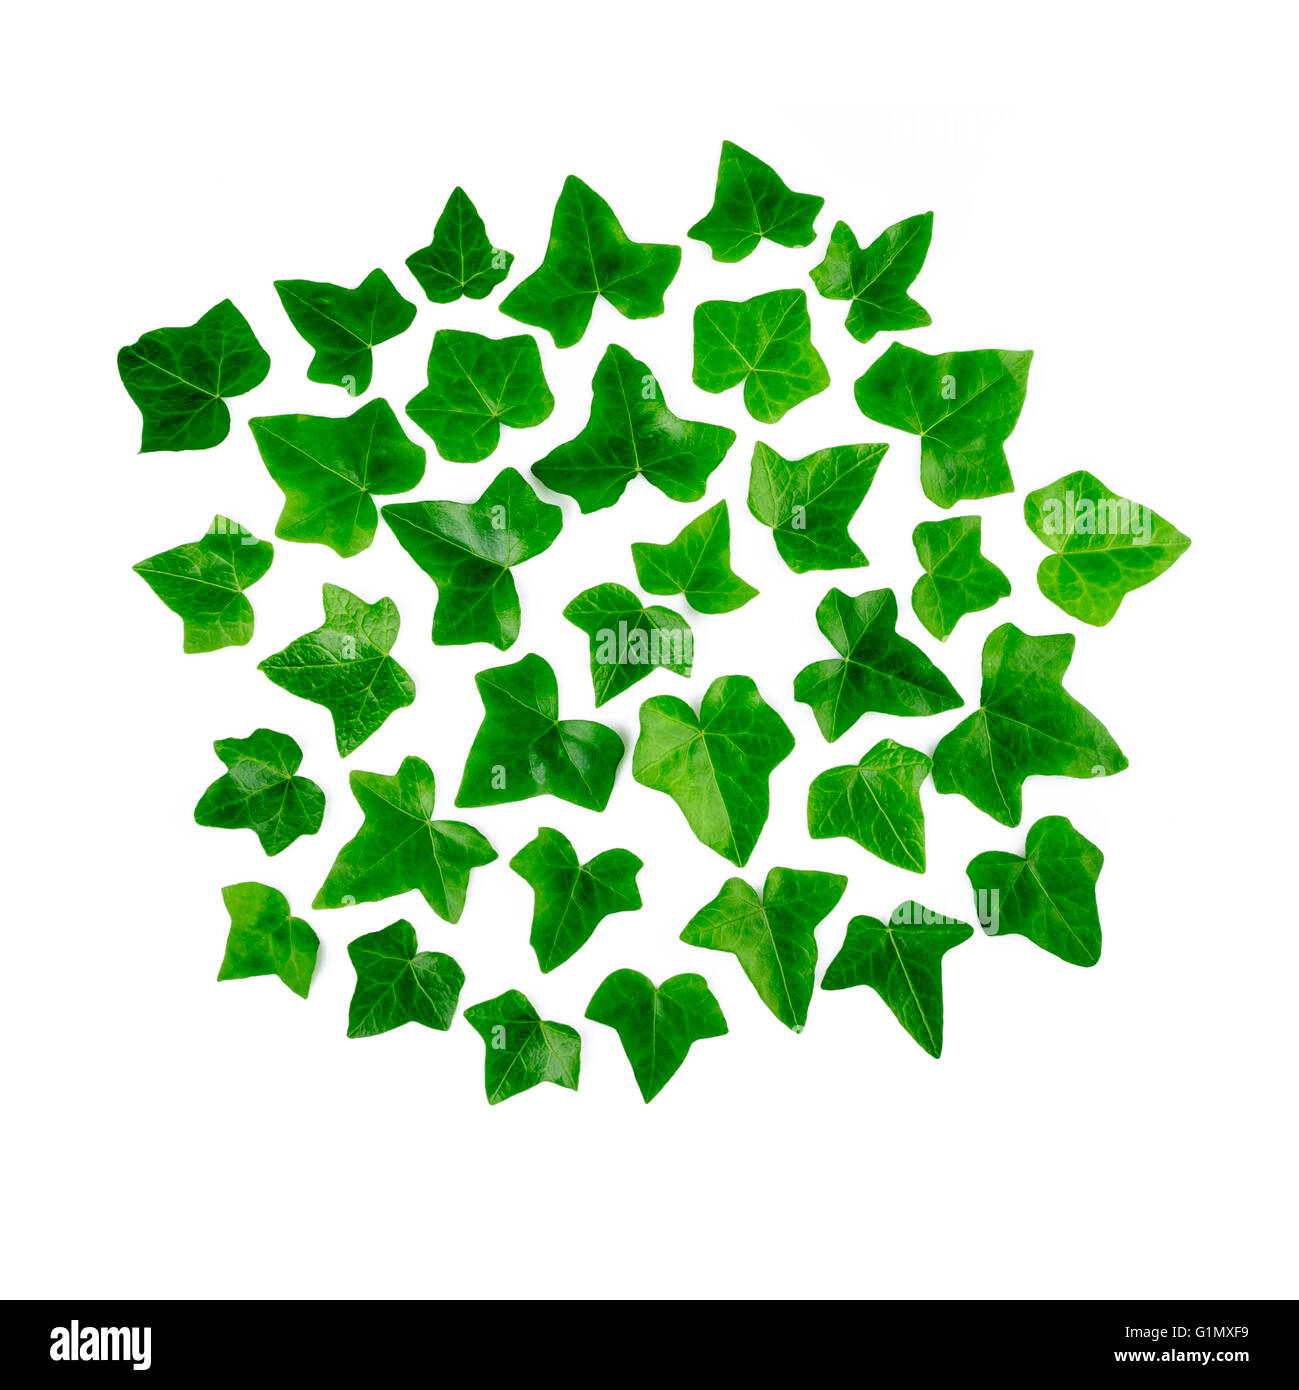 Motif lumineux vert de feuilles de lierre. Ornement de feuilles vertes ivy isolé sur fond blanc. Banque D'Images